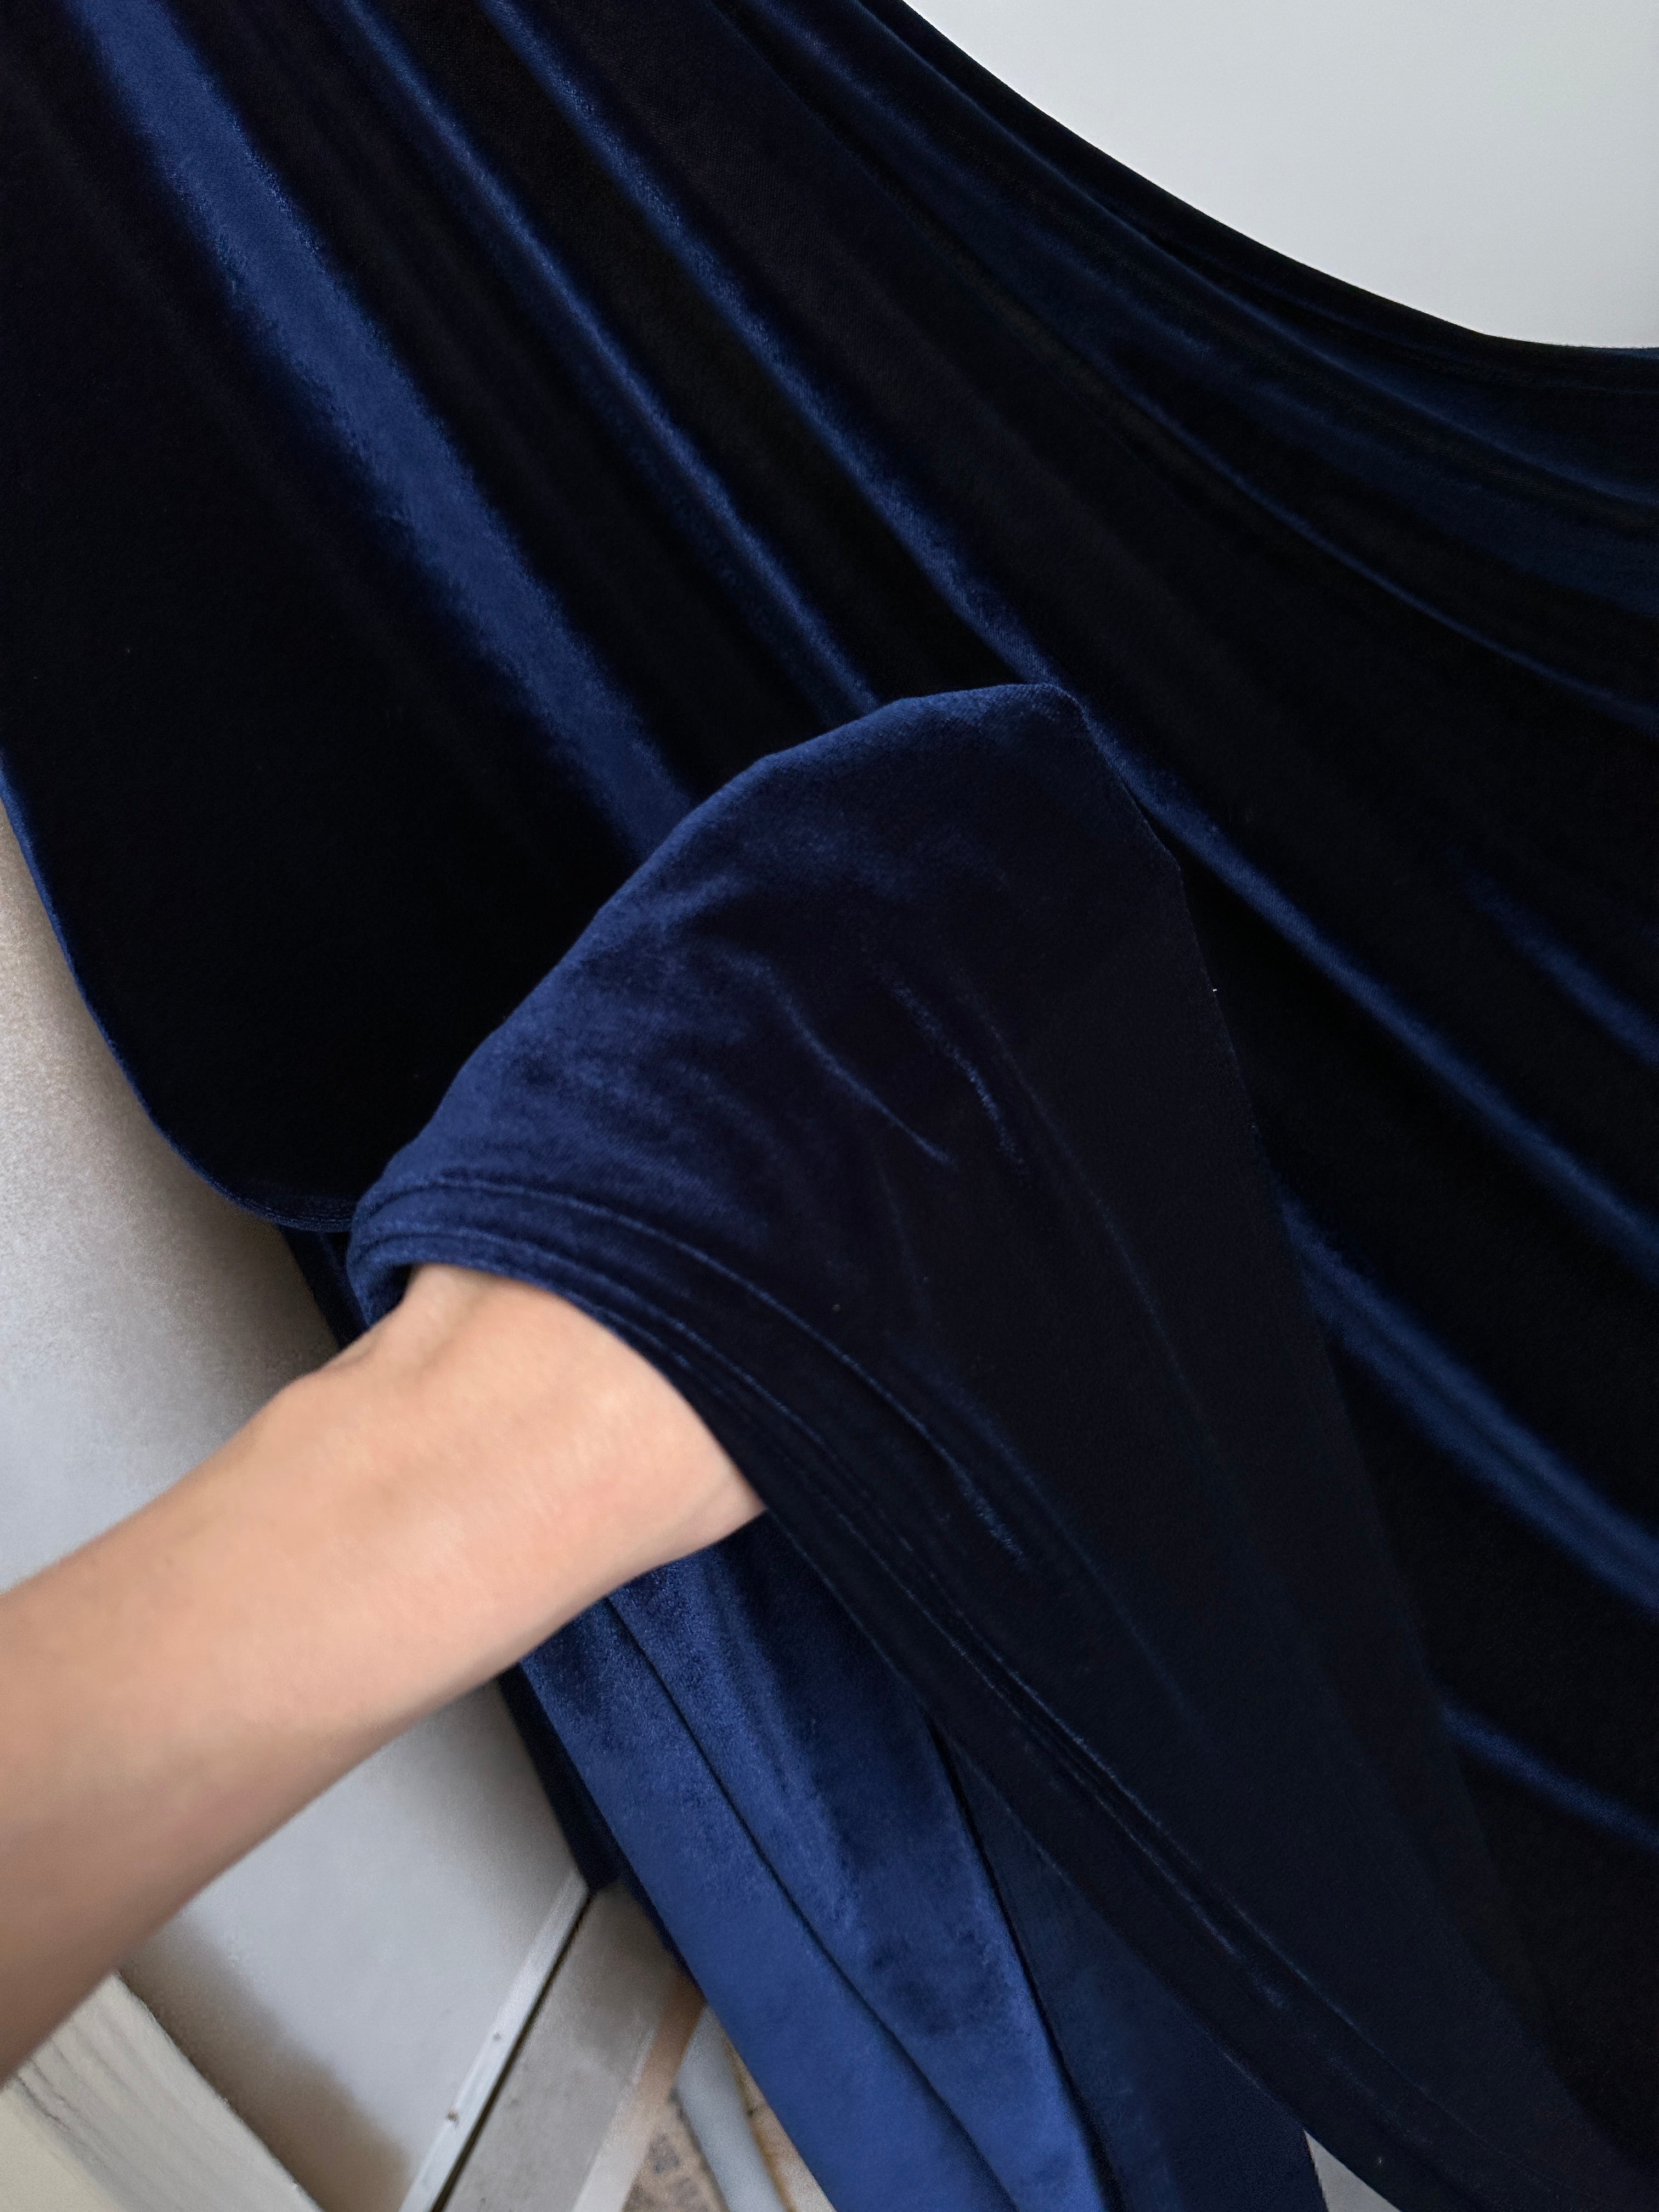 Tiffany Blue Stretch Velvet – KikiTextiles